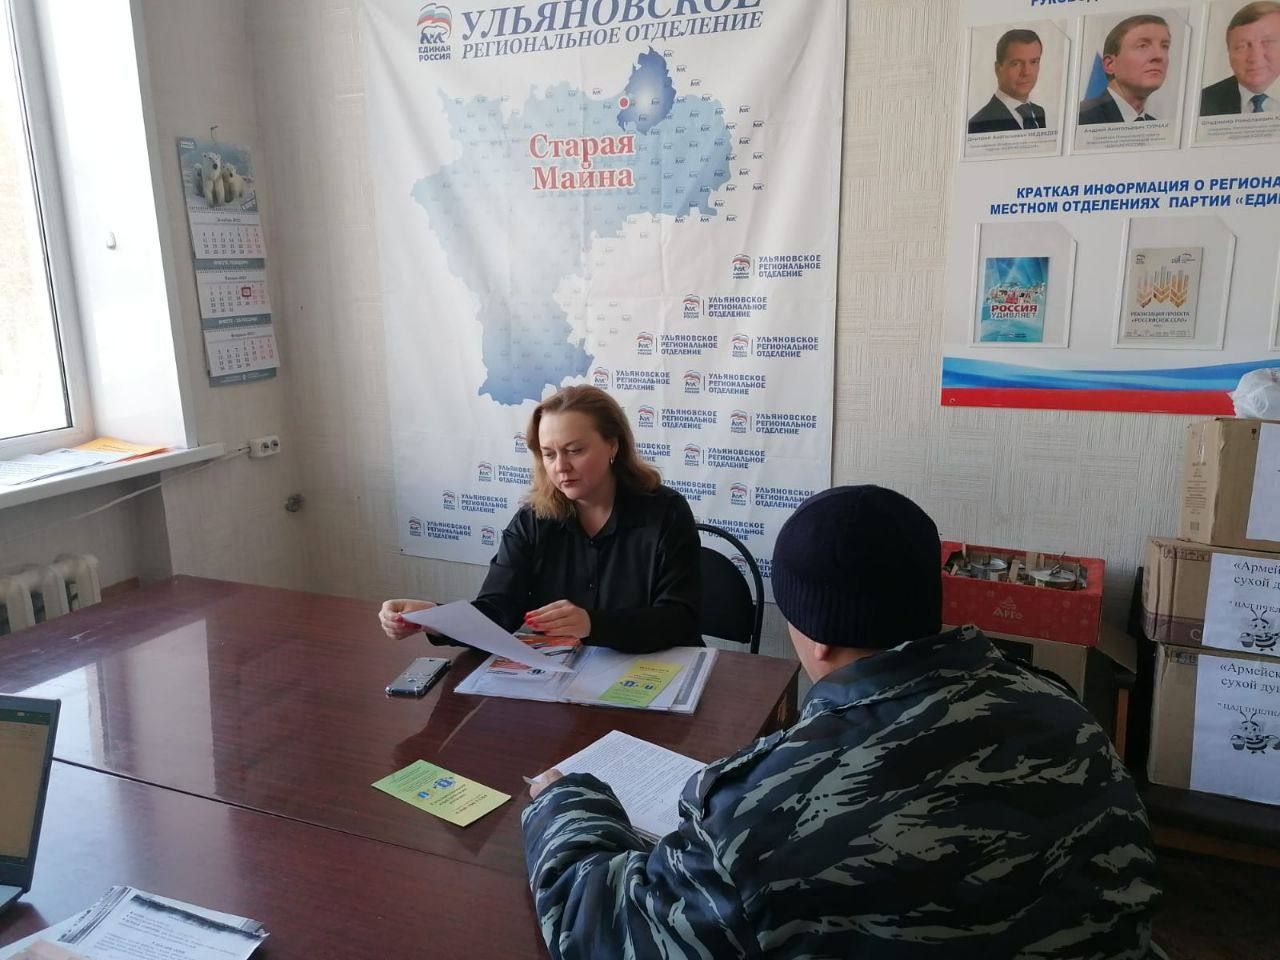 Представители Ульяновского реготделения провели приём граждан на площадках партии “Единая Россия”